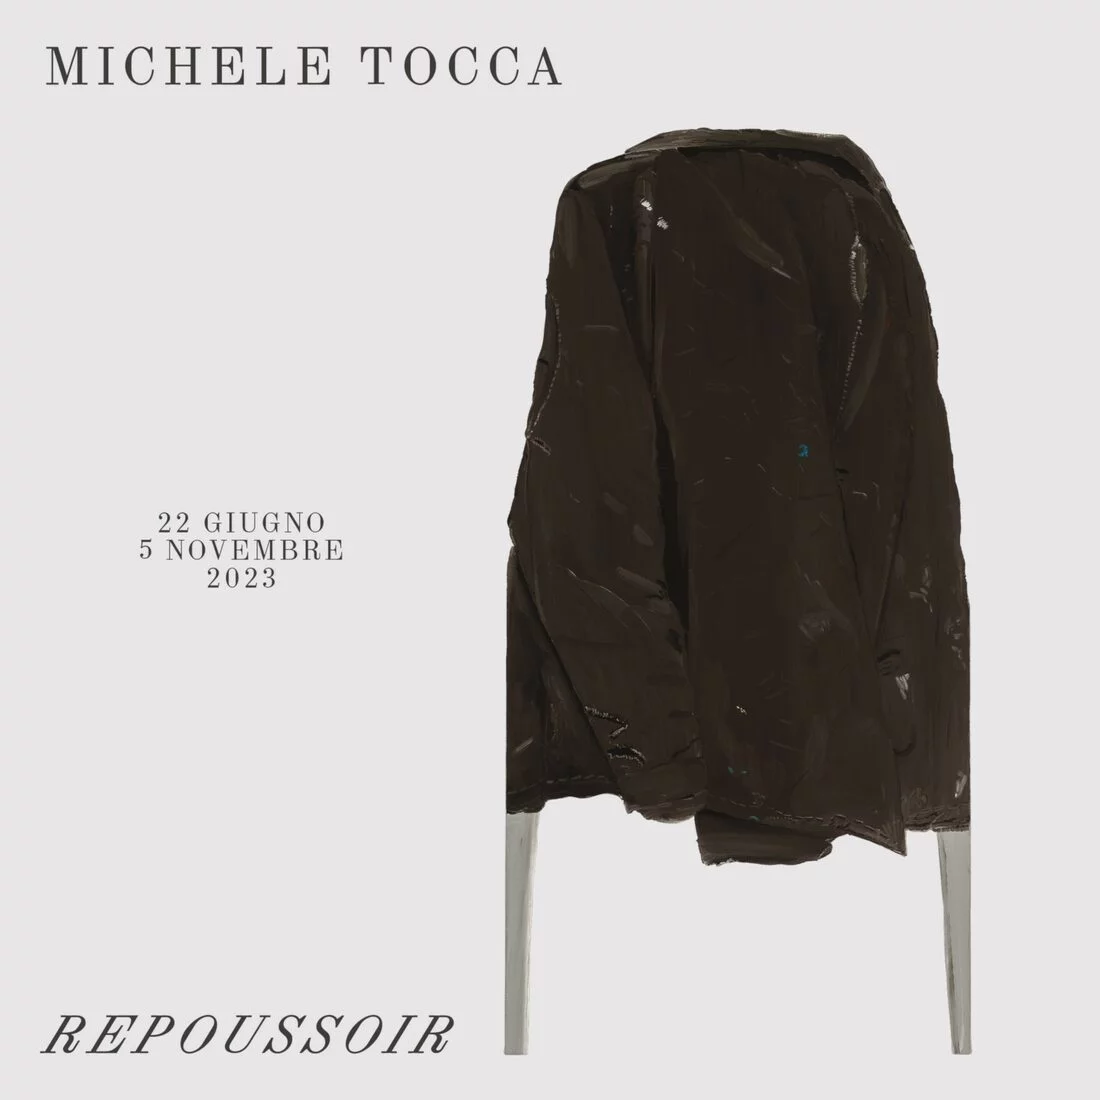 Michele Tocca. Repoussoir